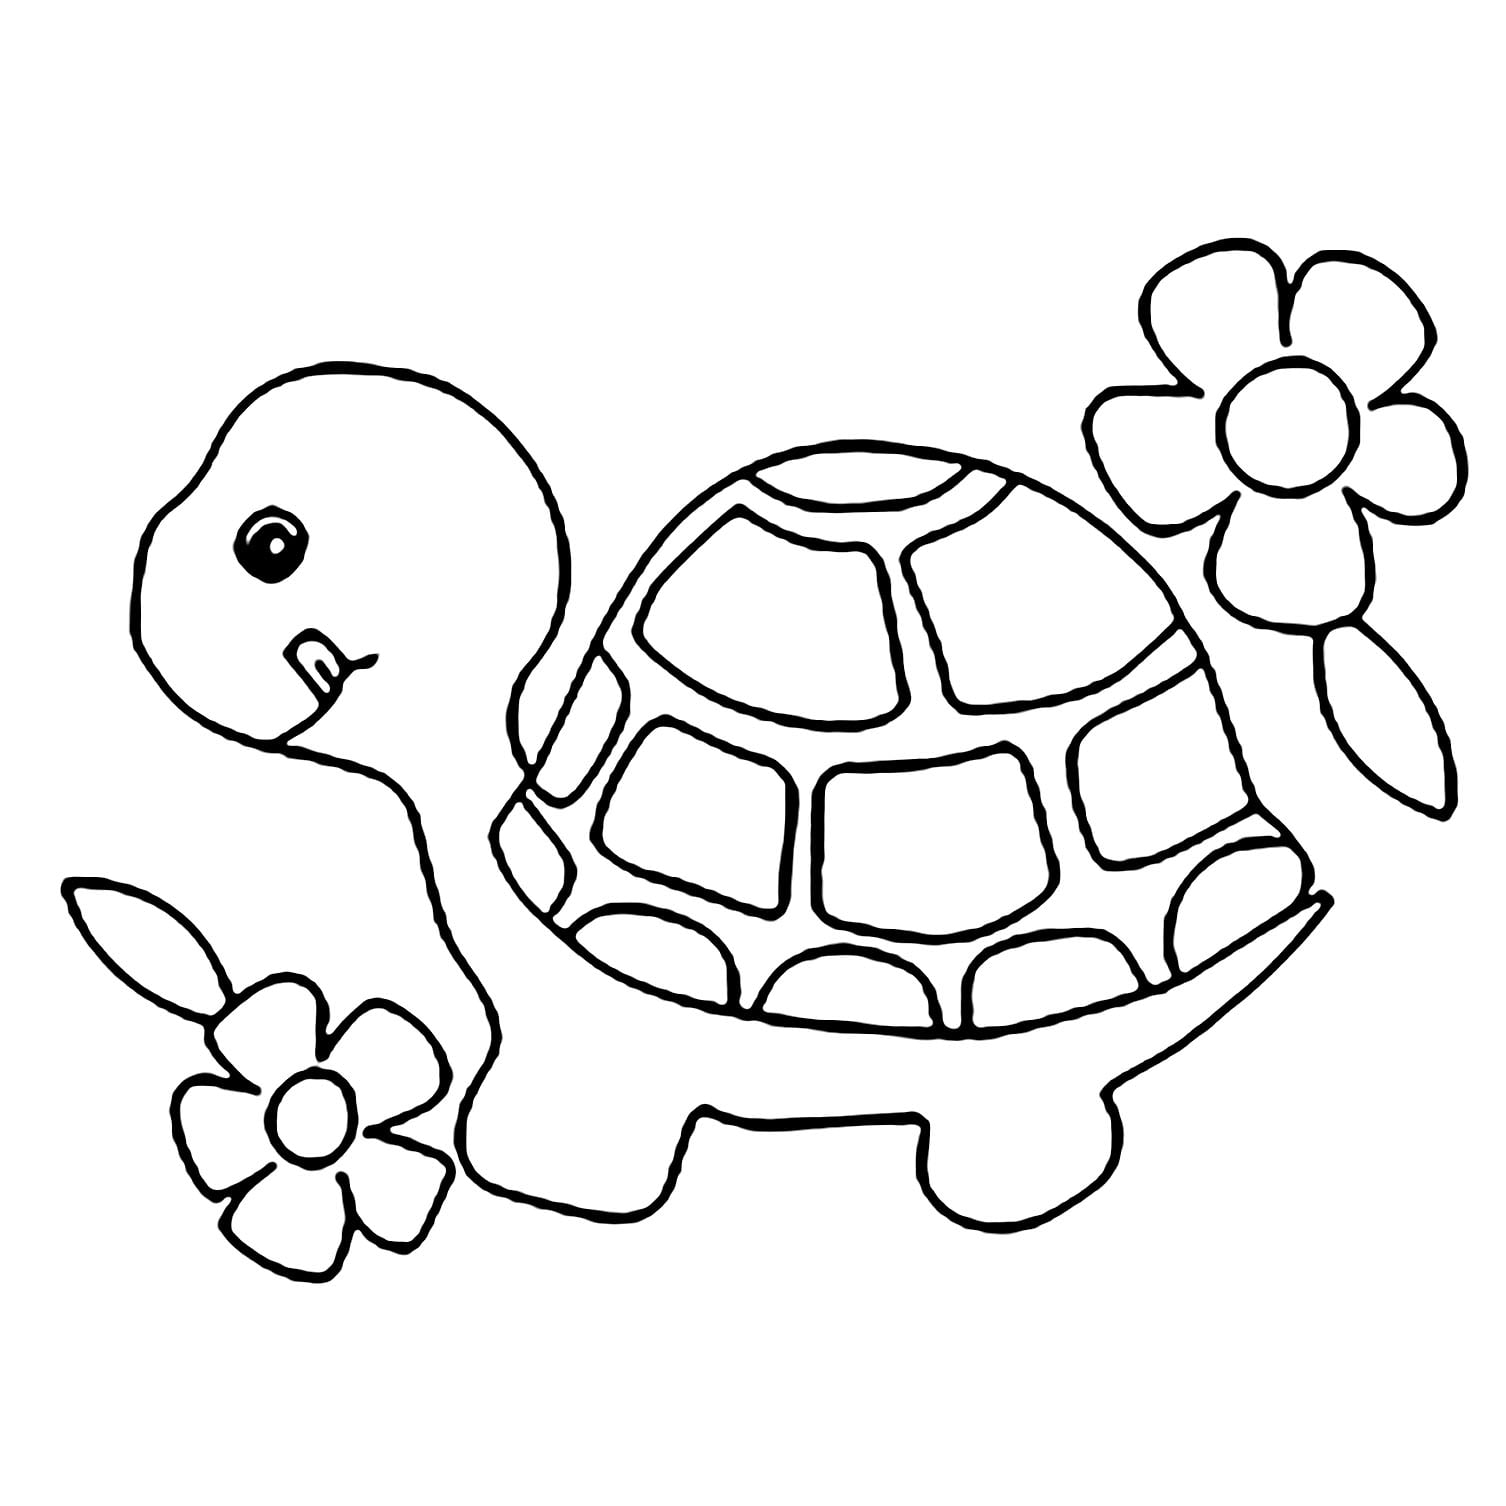 Tranh tô màu con rùa cho bé 3 tuổi  Rùa Tô màu cho trẻ Tranh